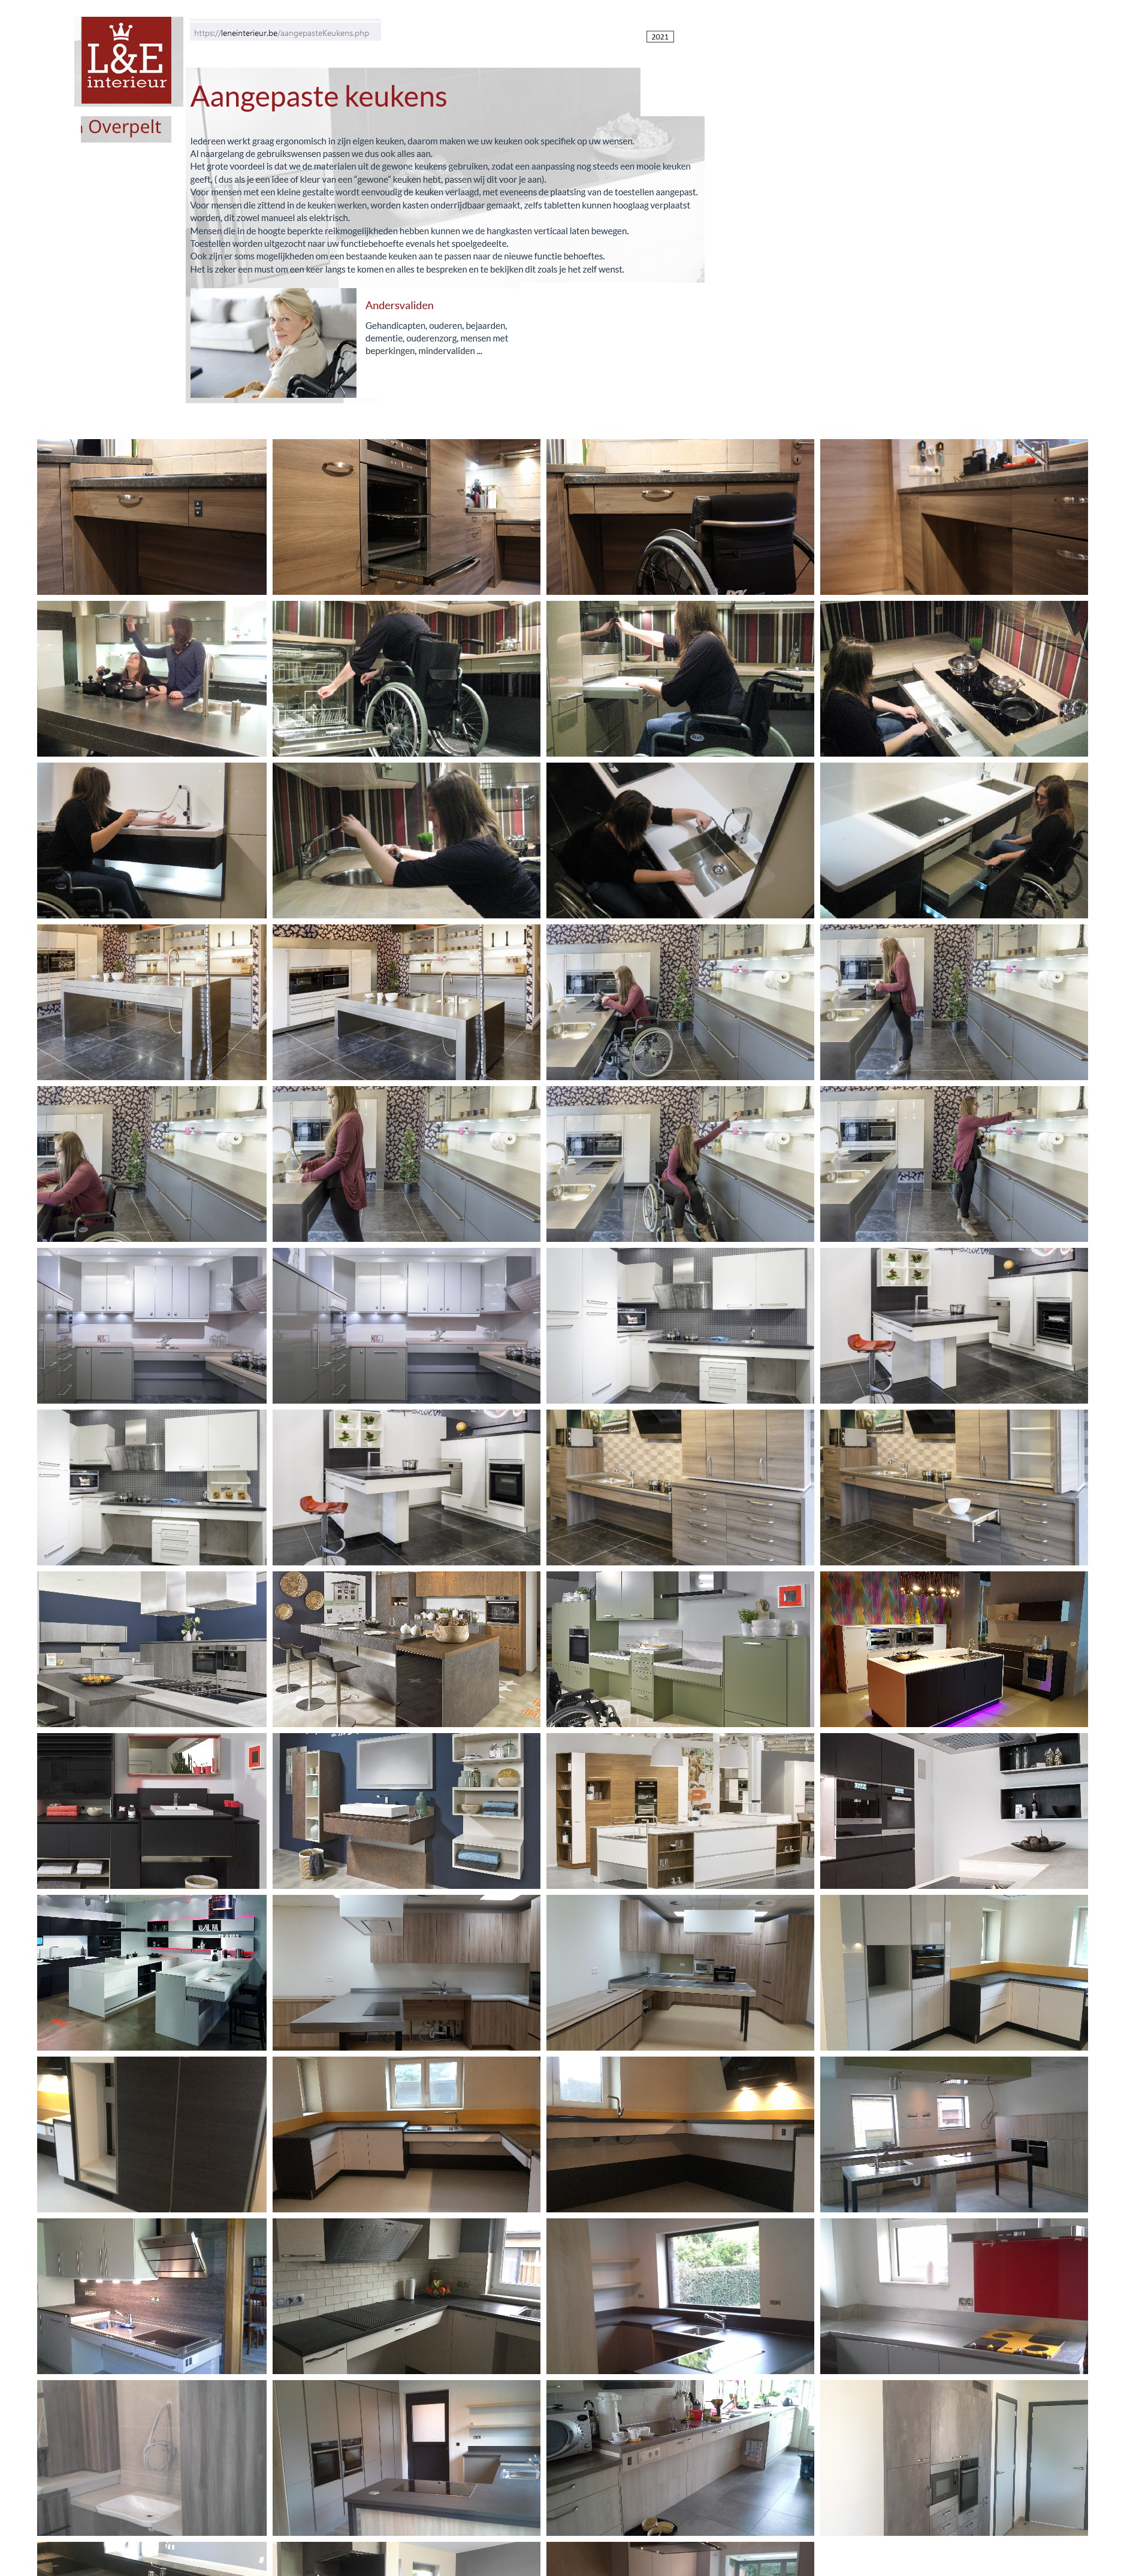 toegevoegd document 3 van L&E hoogteverstelbare keukenuitrusting / aangepaste keukeninrichting  